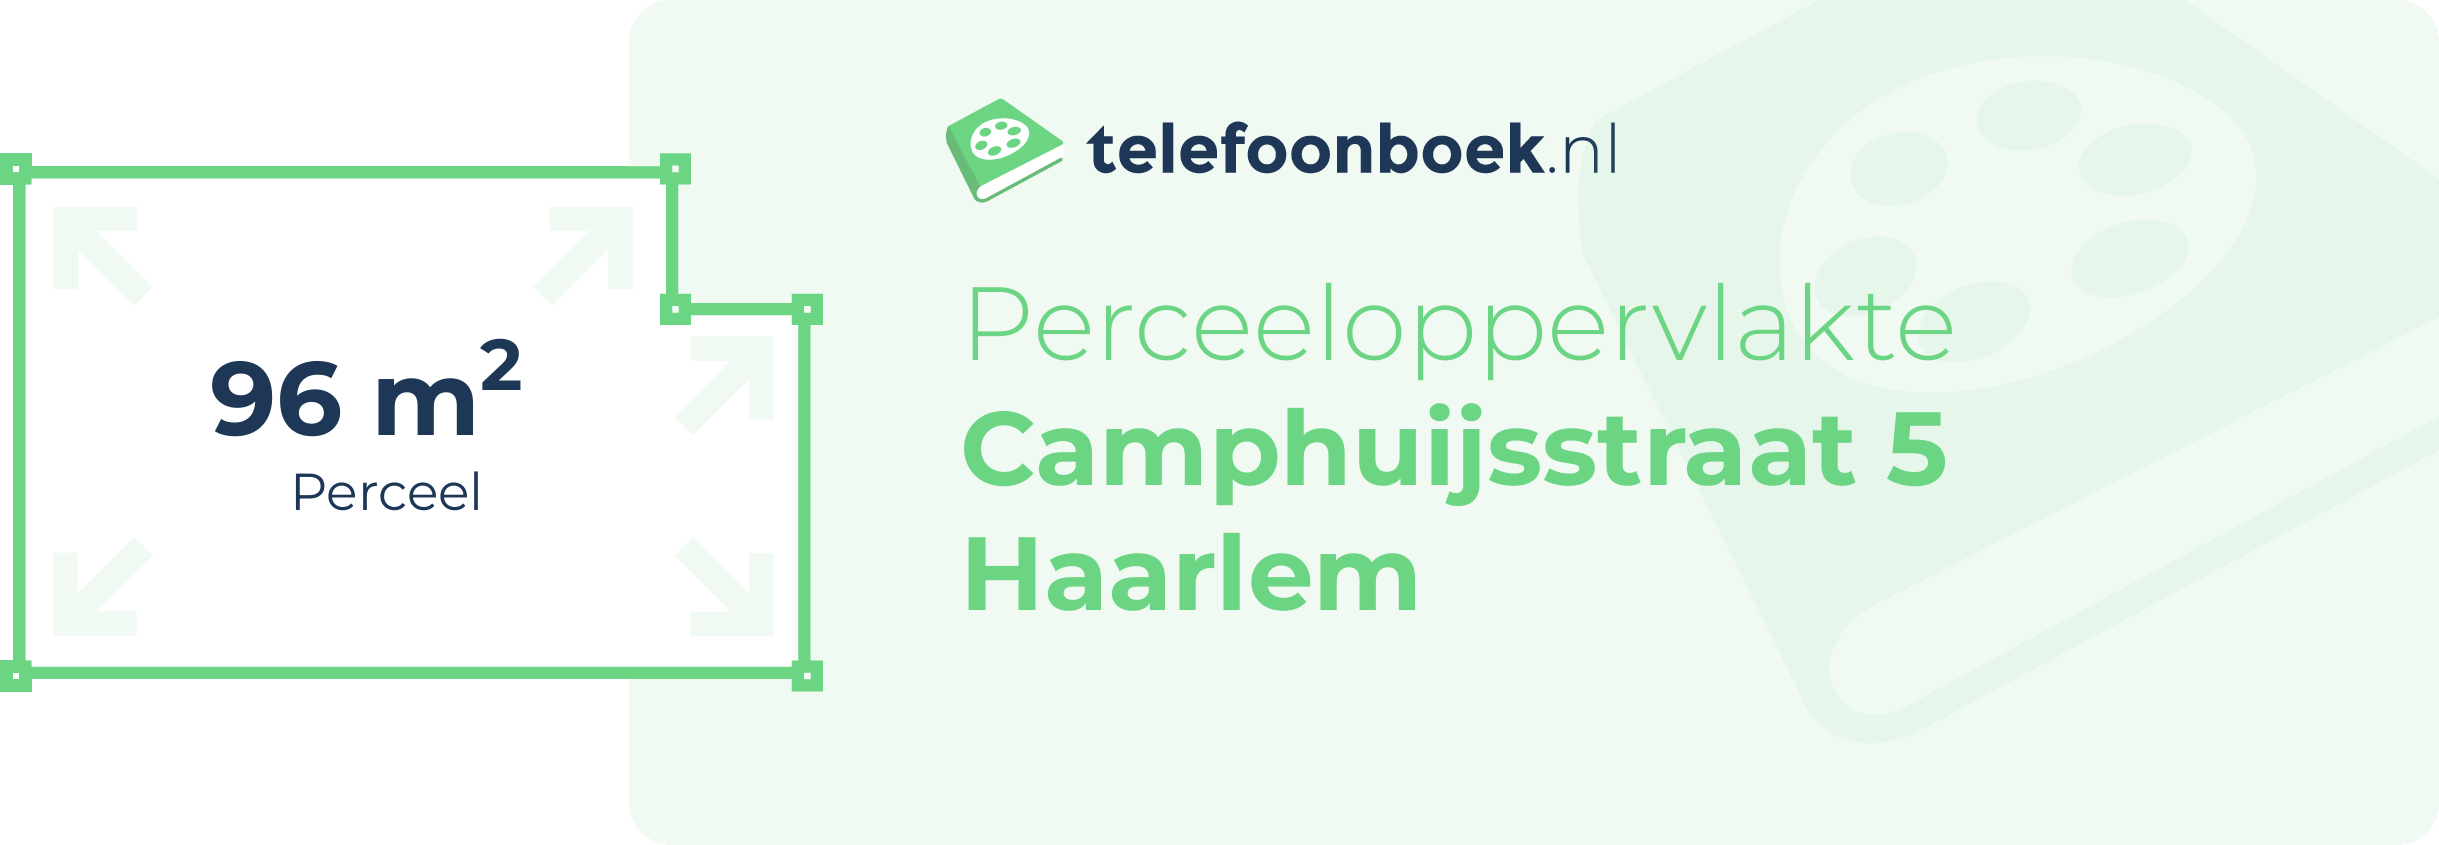 Perceeloppervlakte Camphuijsstraat 5 Haarlem